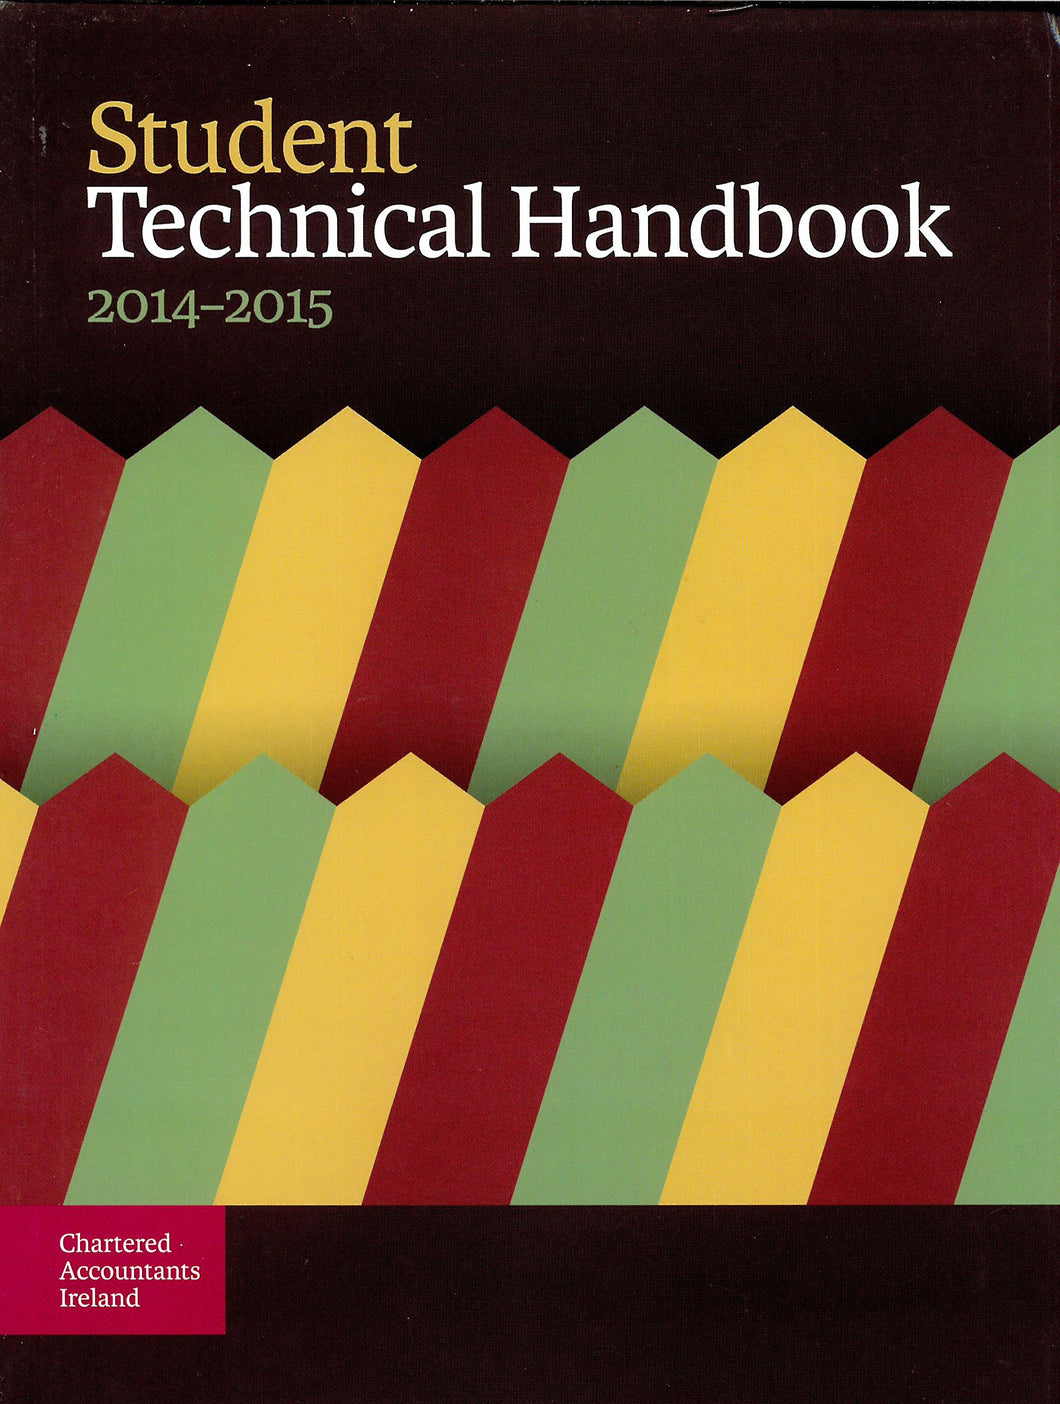 Student Technical Handbook 2014-2015 - Chartered Accountants Ireland